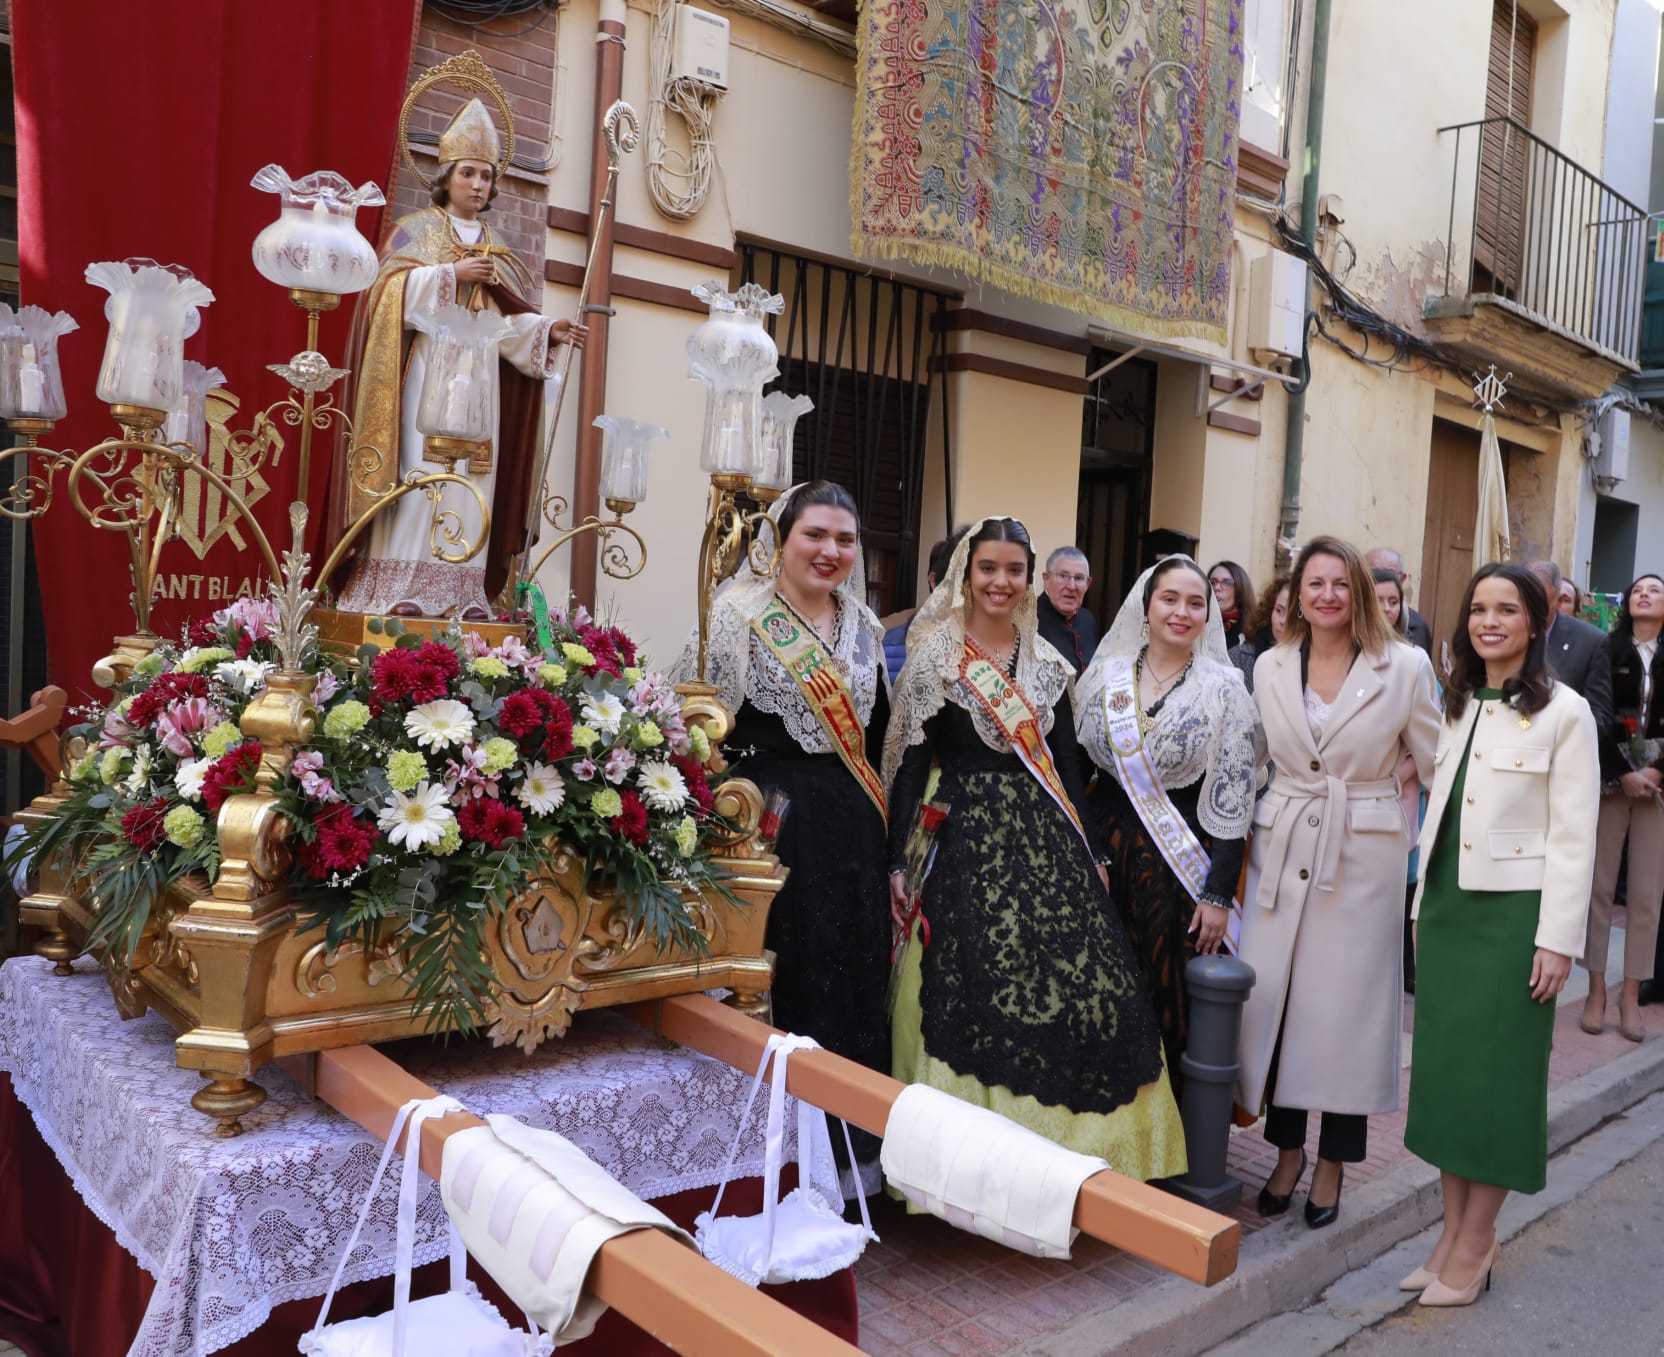 
		La alcaldesa de Castellón reivindica “el orgullo de Castellón por sus tradiciones y las ‘festes de carrer’”, en el día grande de las celebraciones por Sant Blai
		
	